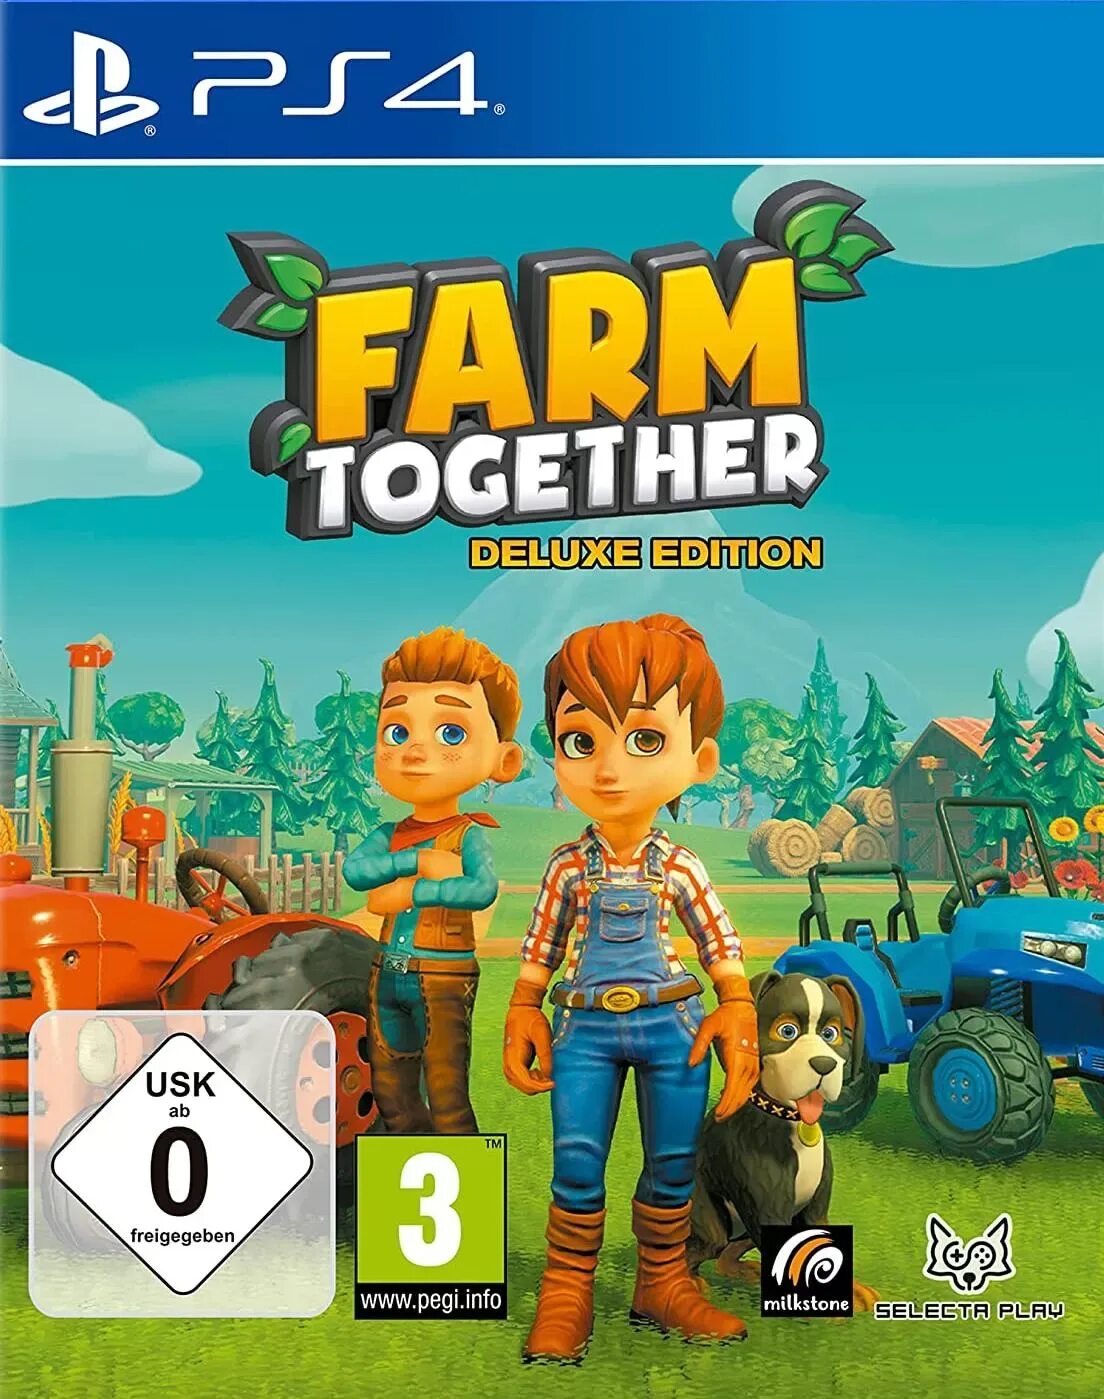 Farm together. Together игра. Супер маленькие игры. Farm together обложка.